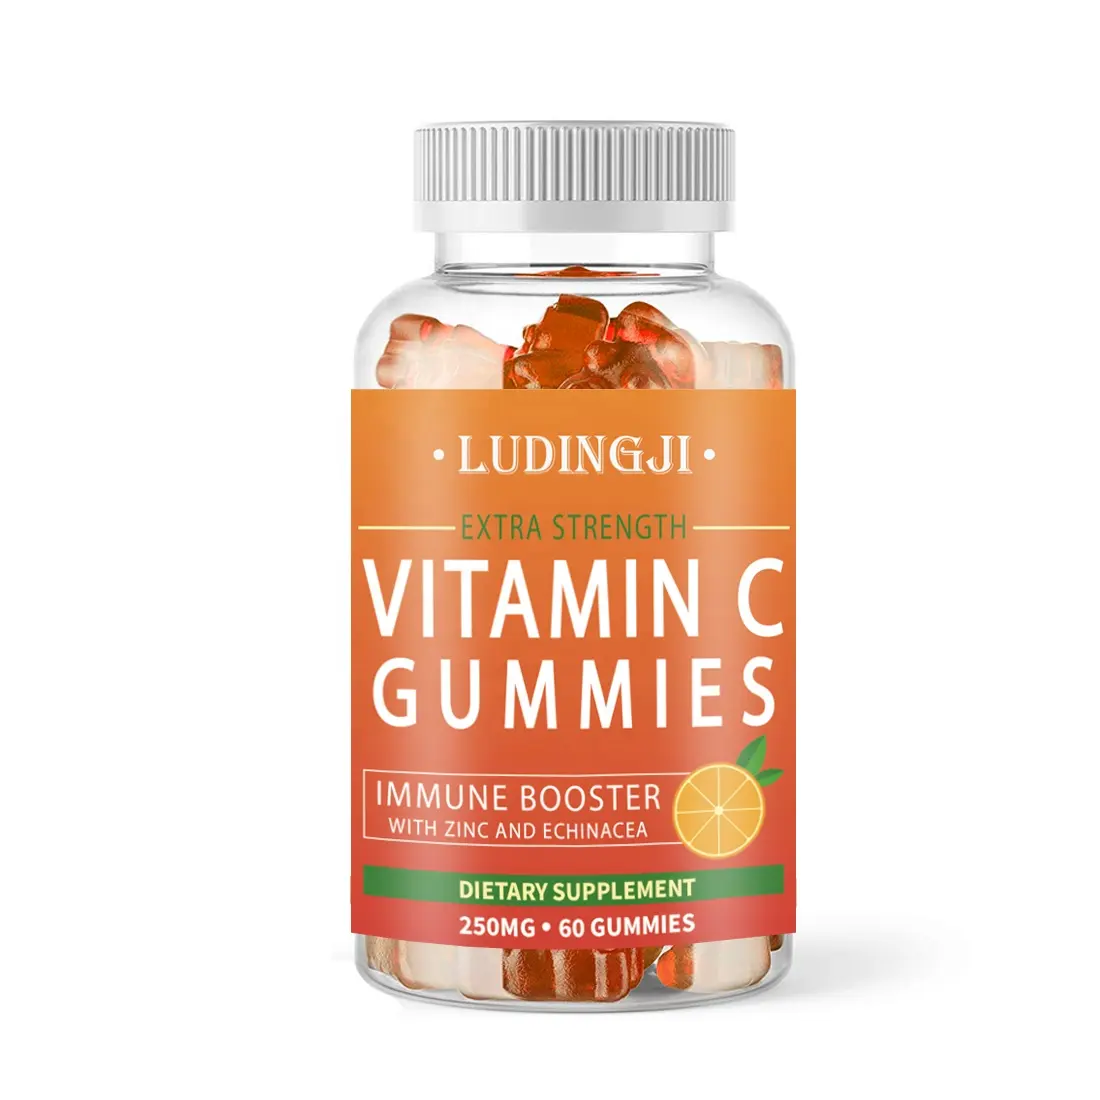 2020 Hot Sale Vegane Vitamine Gummi mit Vitamin C und Zink Vitamin C Gummies